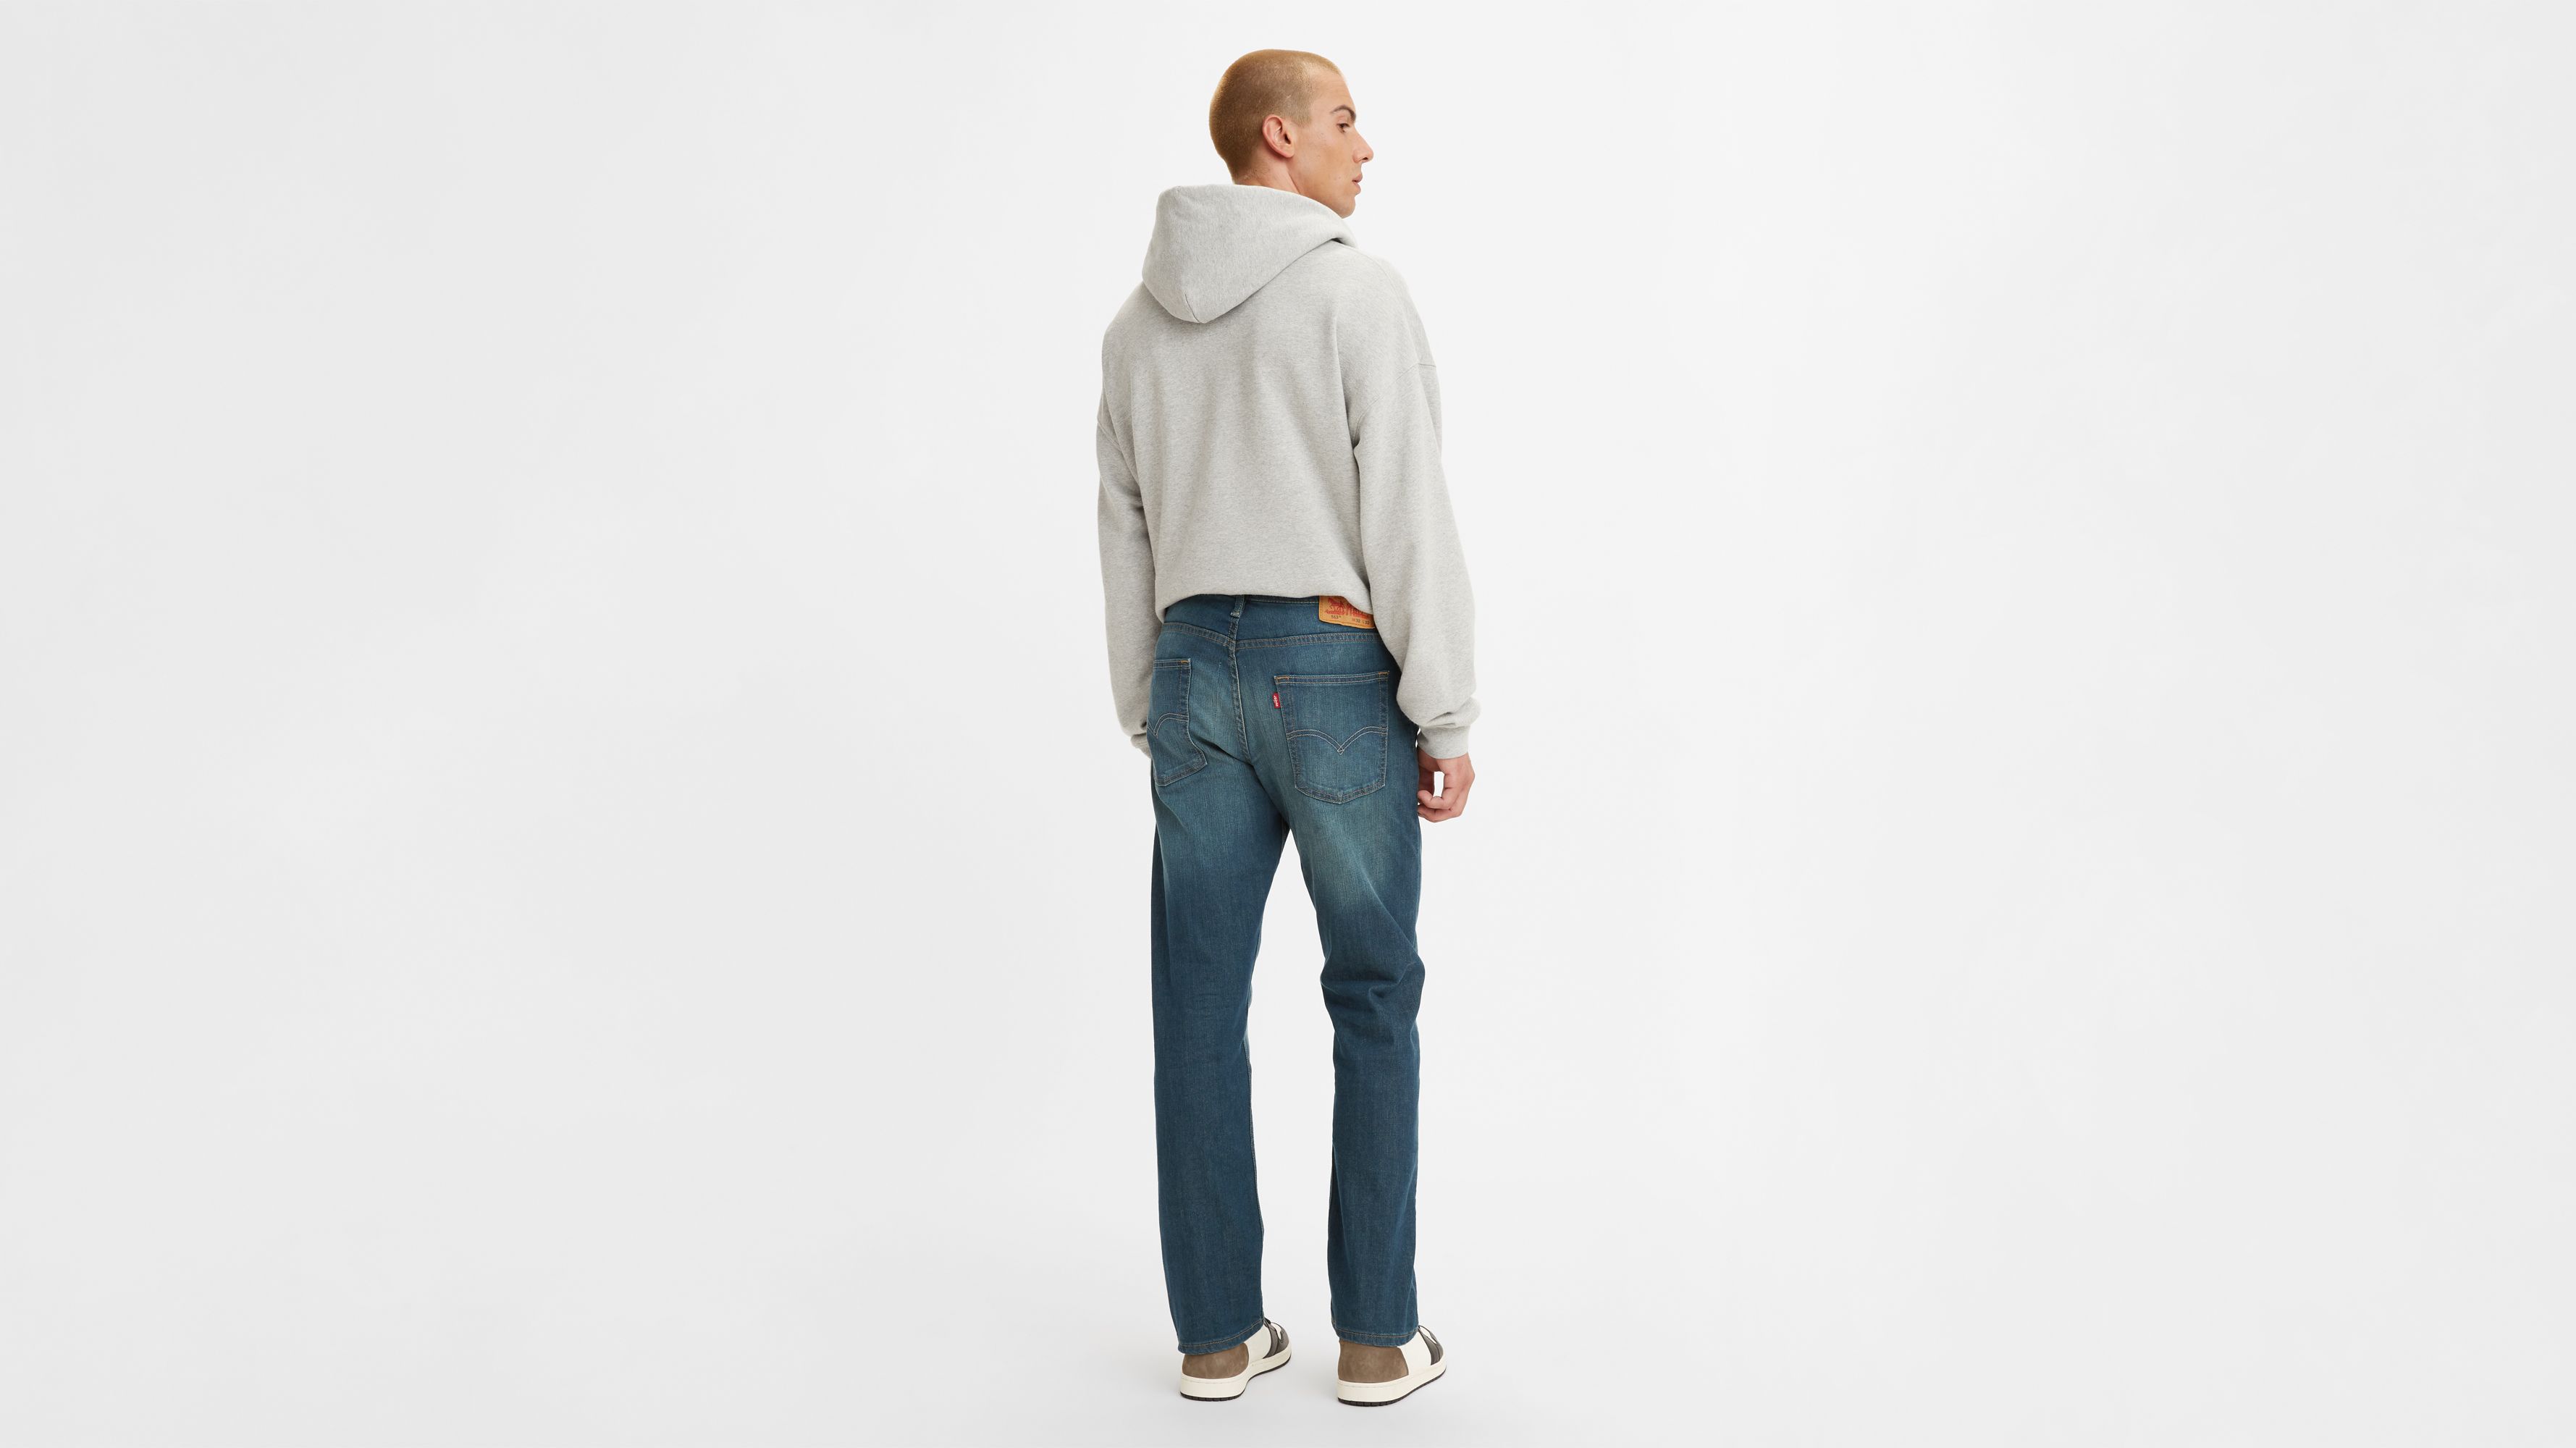 Levis 513 - Slim Straight Line 8 Jeans - Zaha, 28W X 32L - Grey Levi | eBay